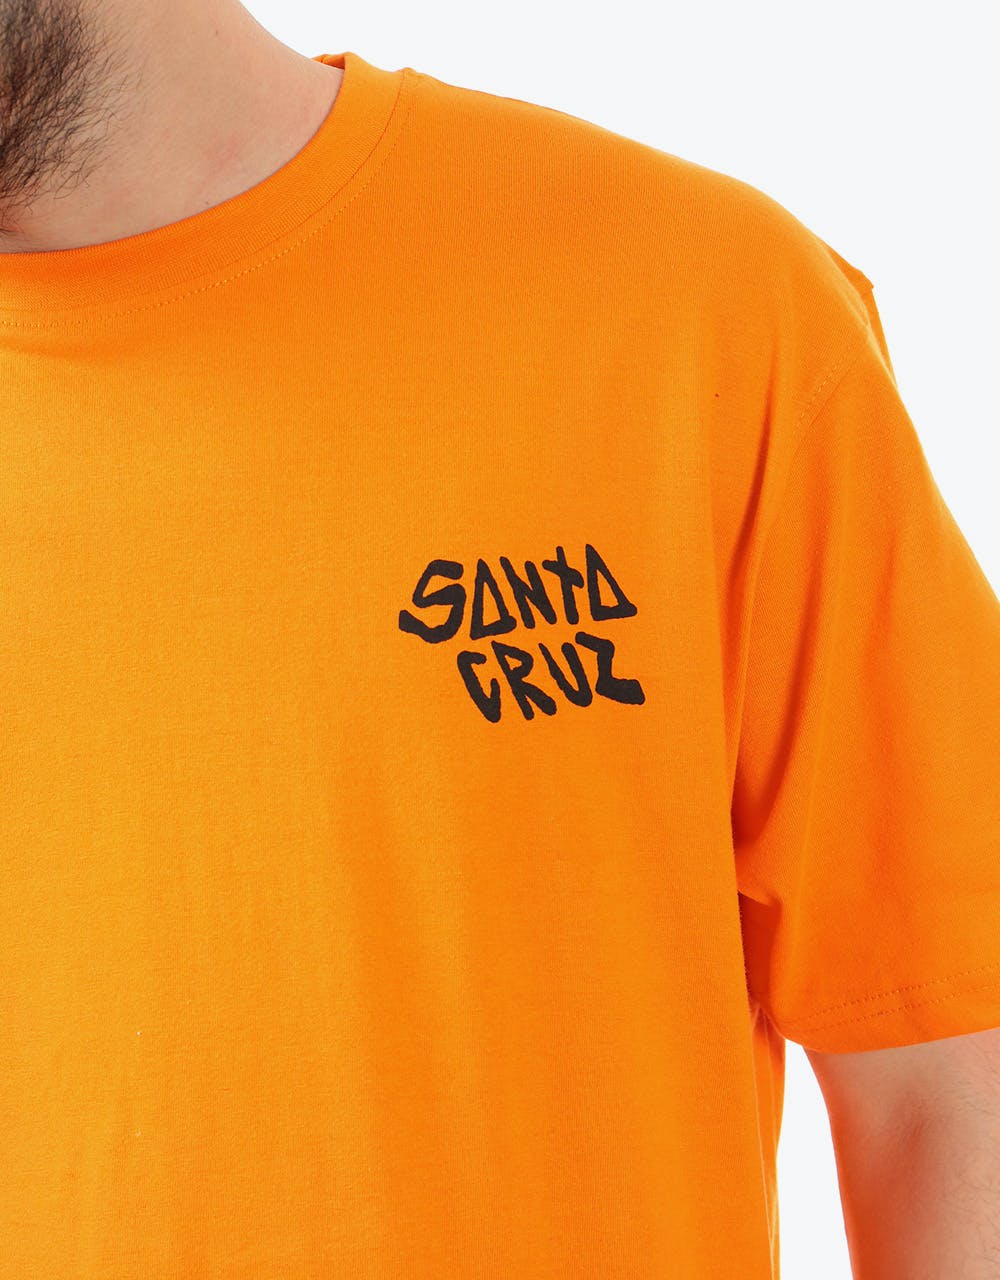 Santa Cruz Black Magic Hand T-Shirt - Safety Orange